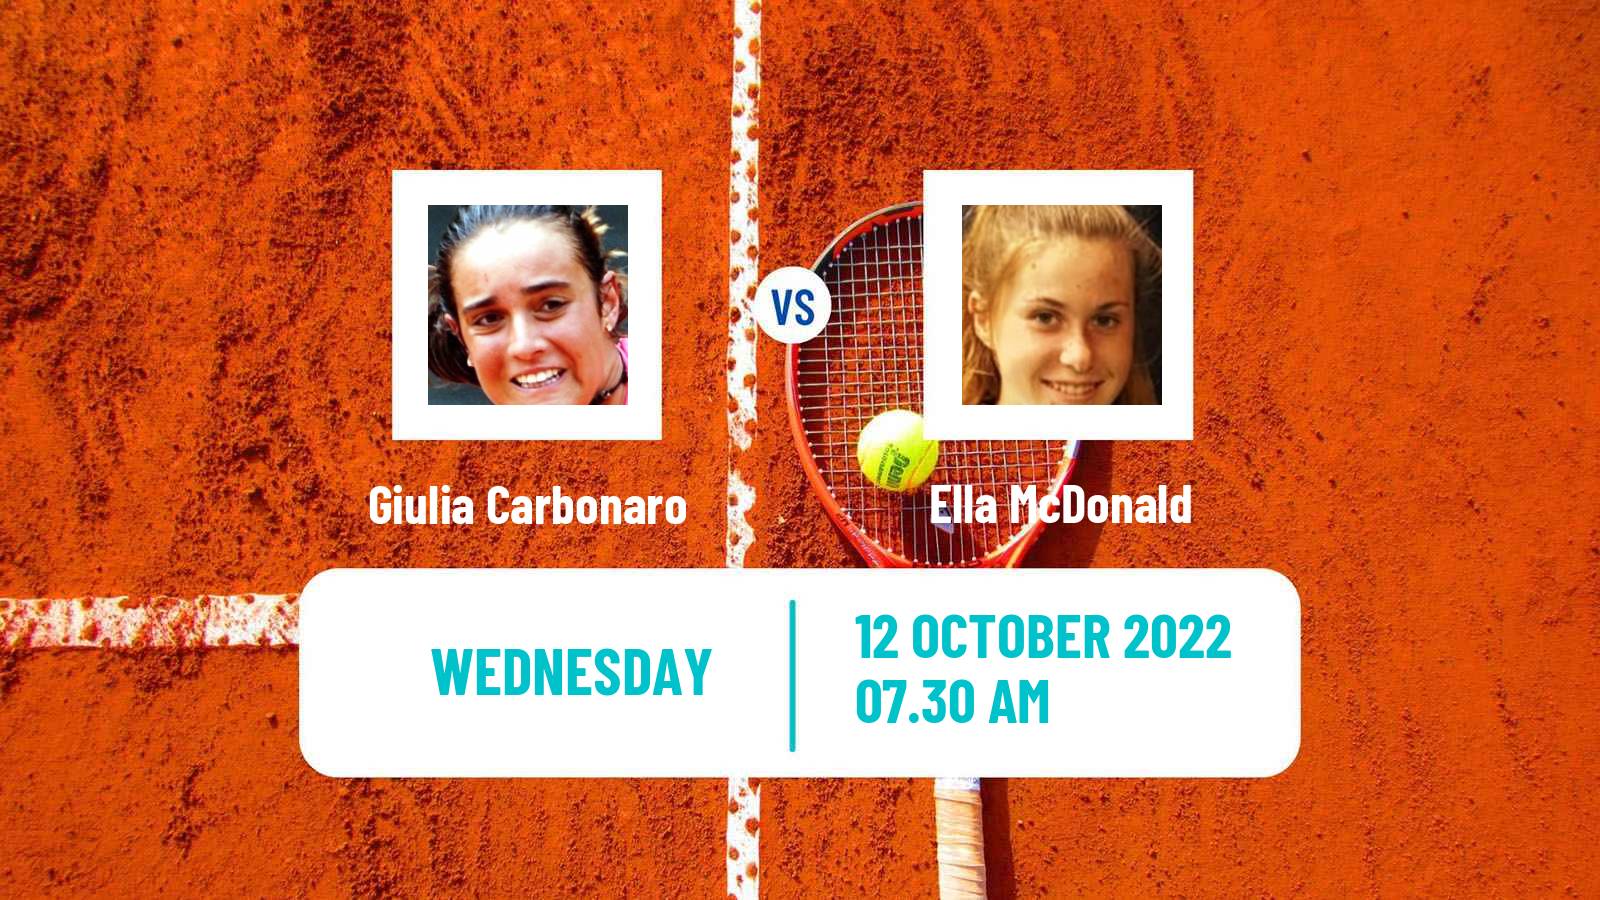 Tennis ITF Tournaments Giulia Carbonaro - Ella McDonald